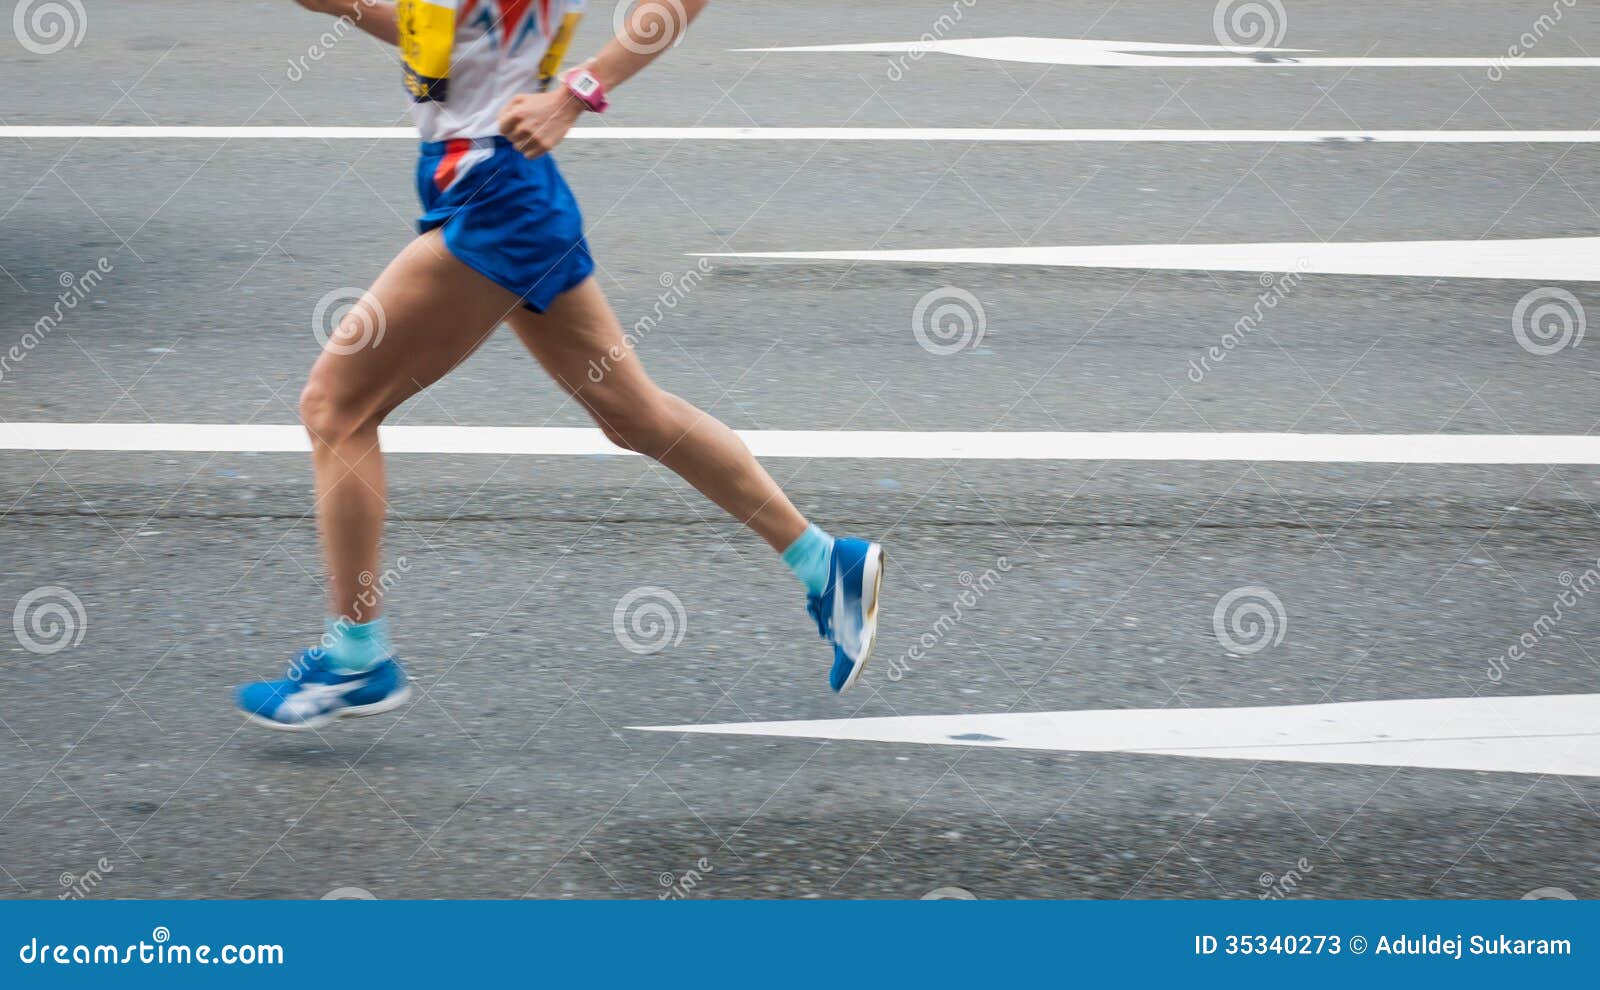 Marathon stock image. Image of running, sports, shoe - 35340273